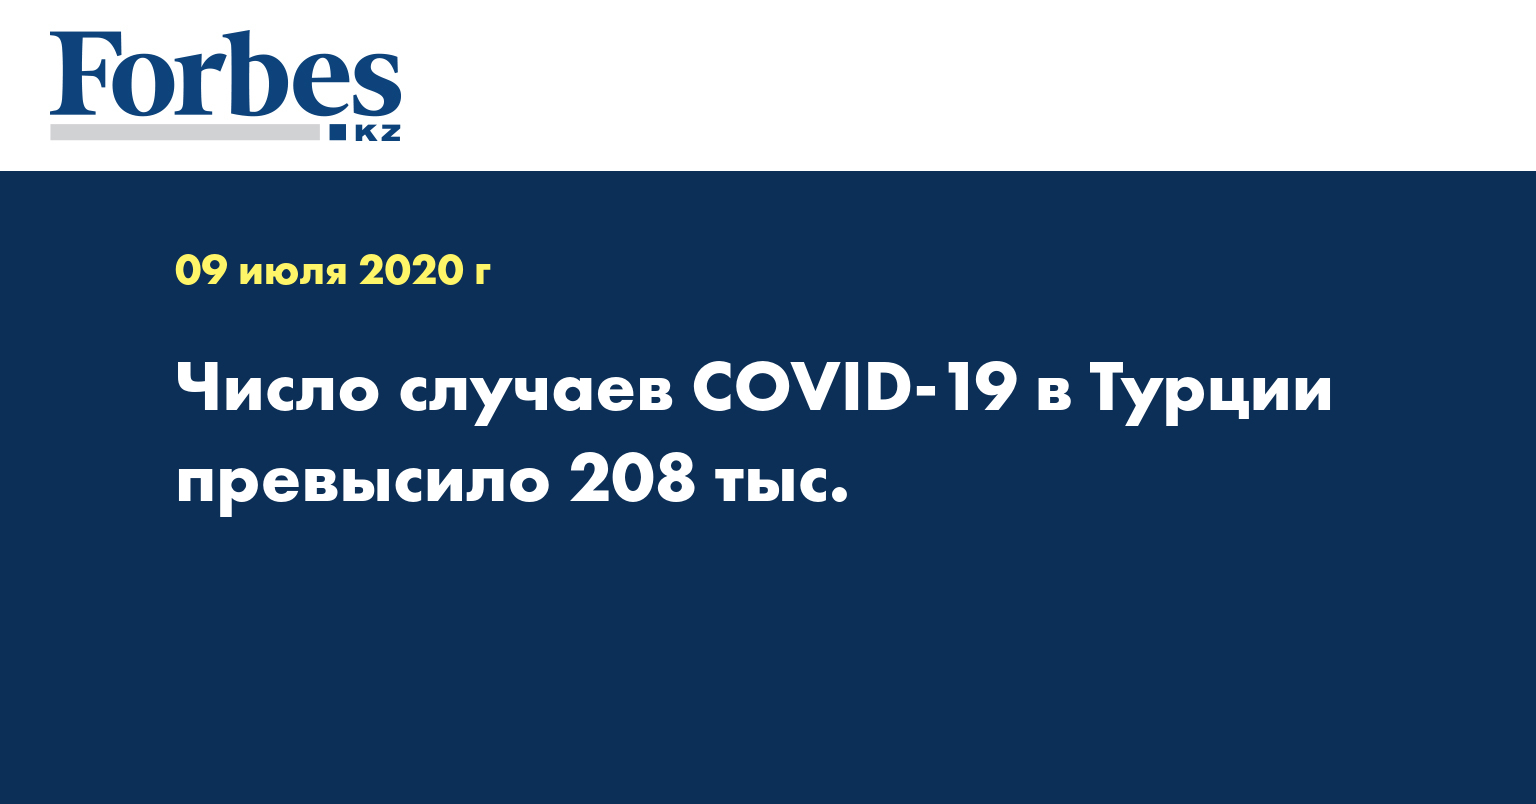 Число случаев COVID-19 в Турции превысило 208 тыс.